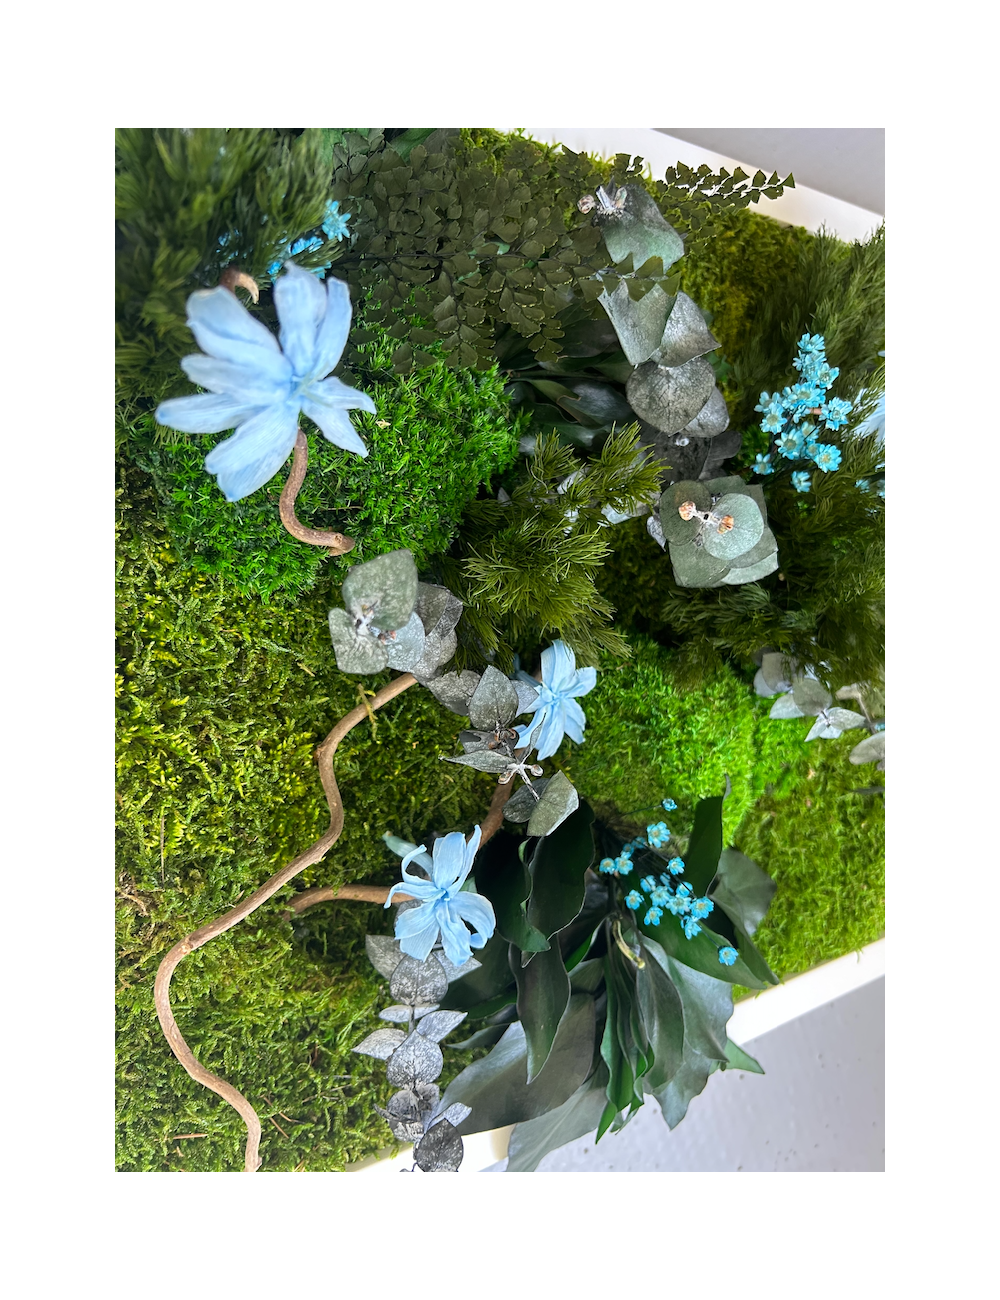 Tableau végétal avec végétaux verts et bleus